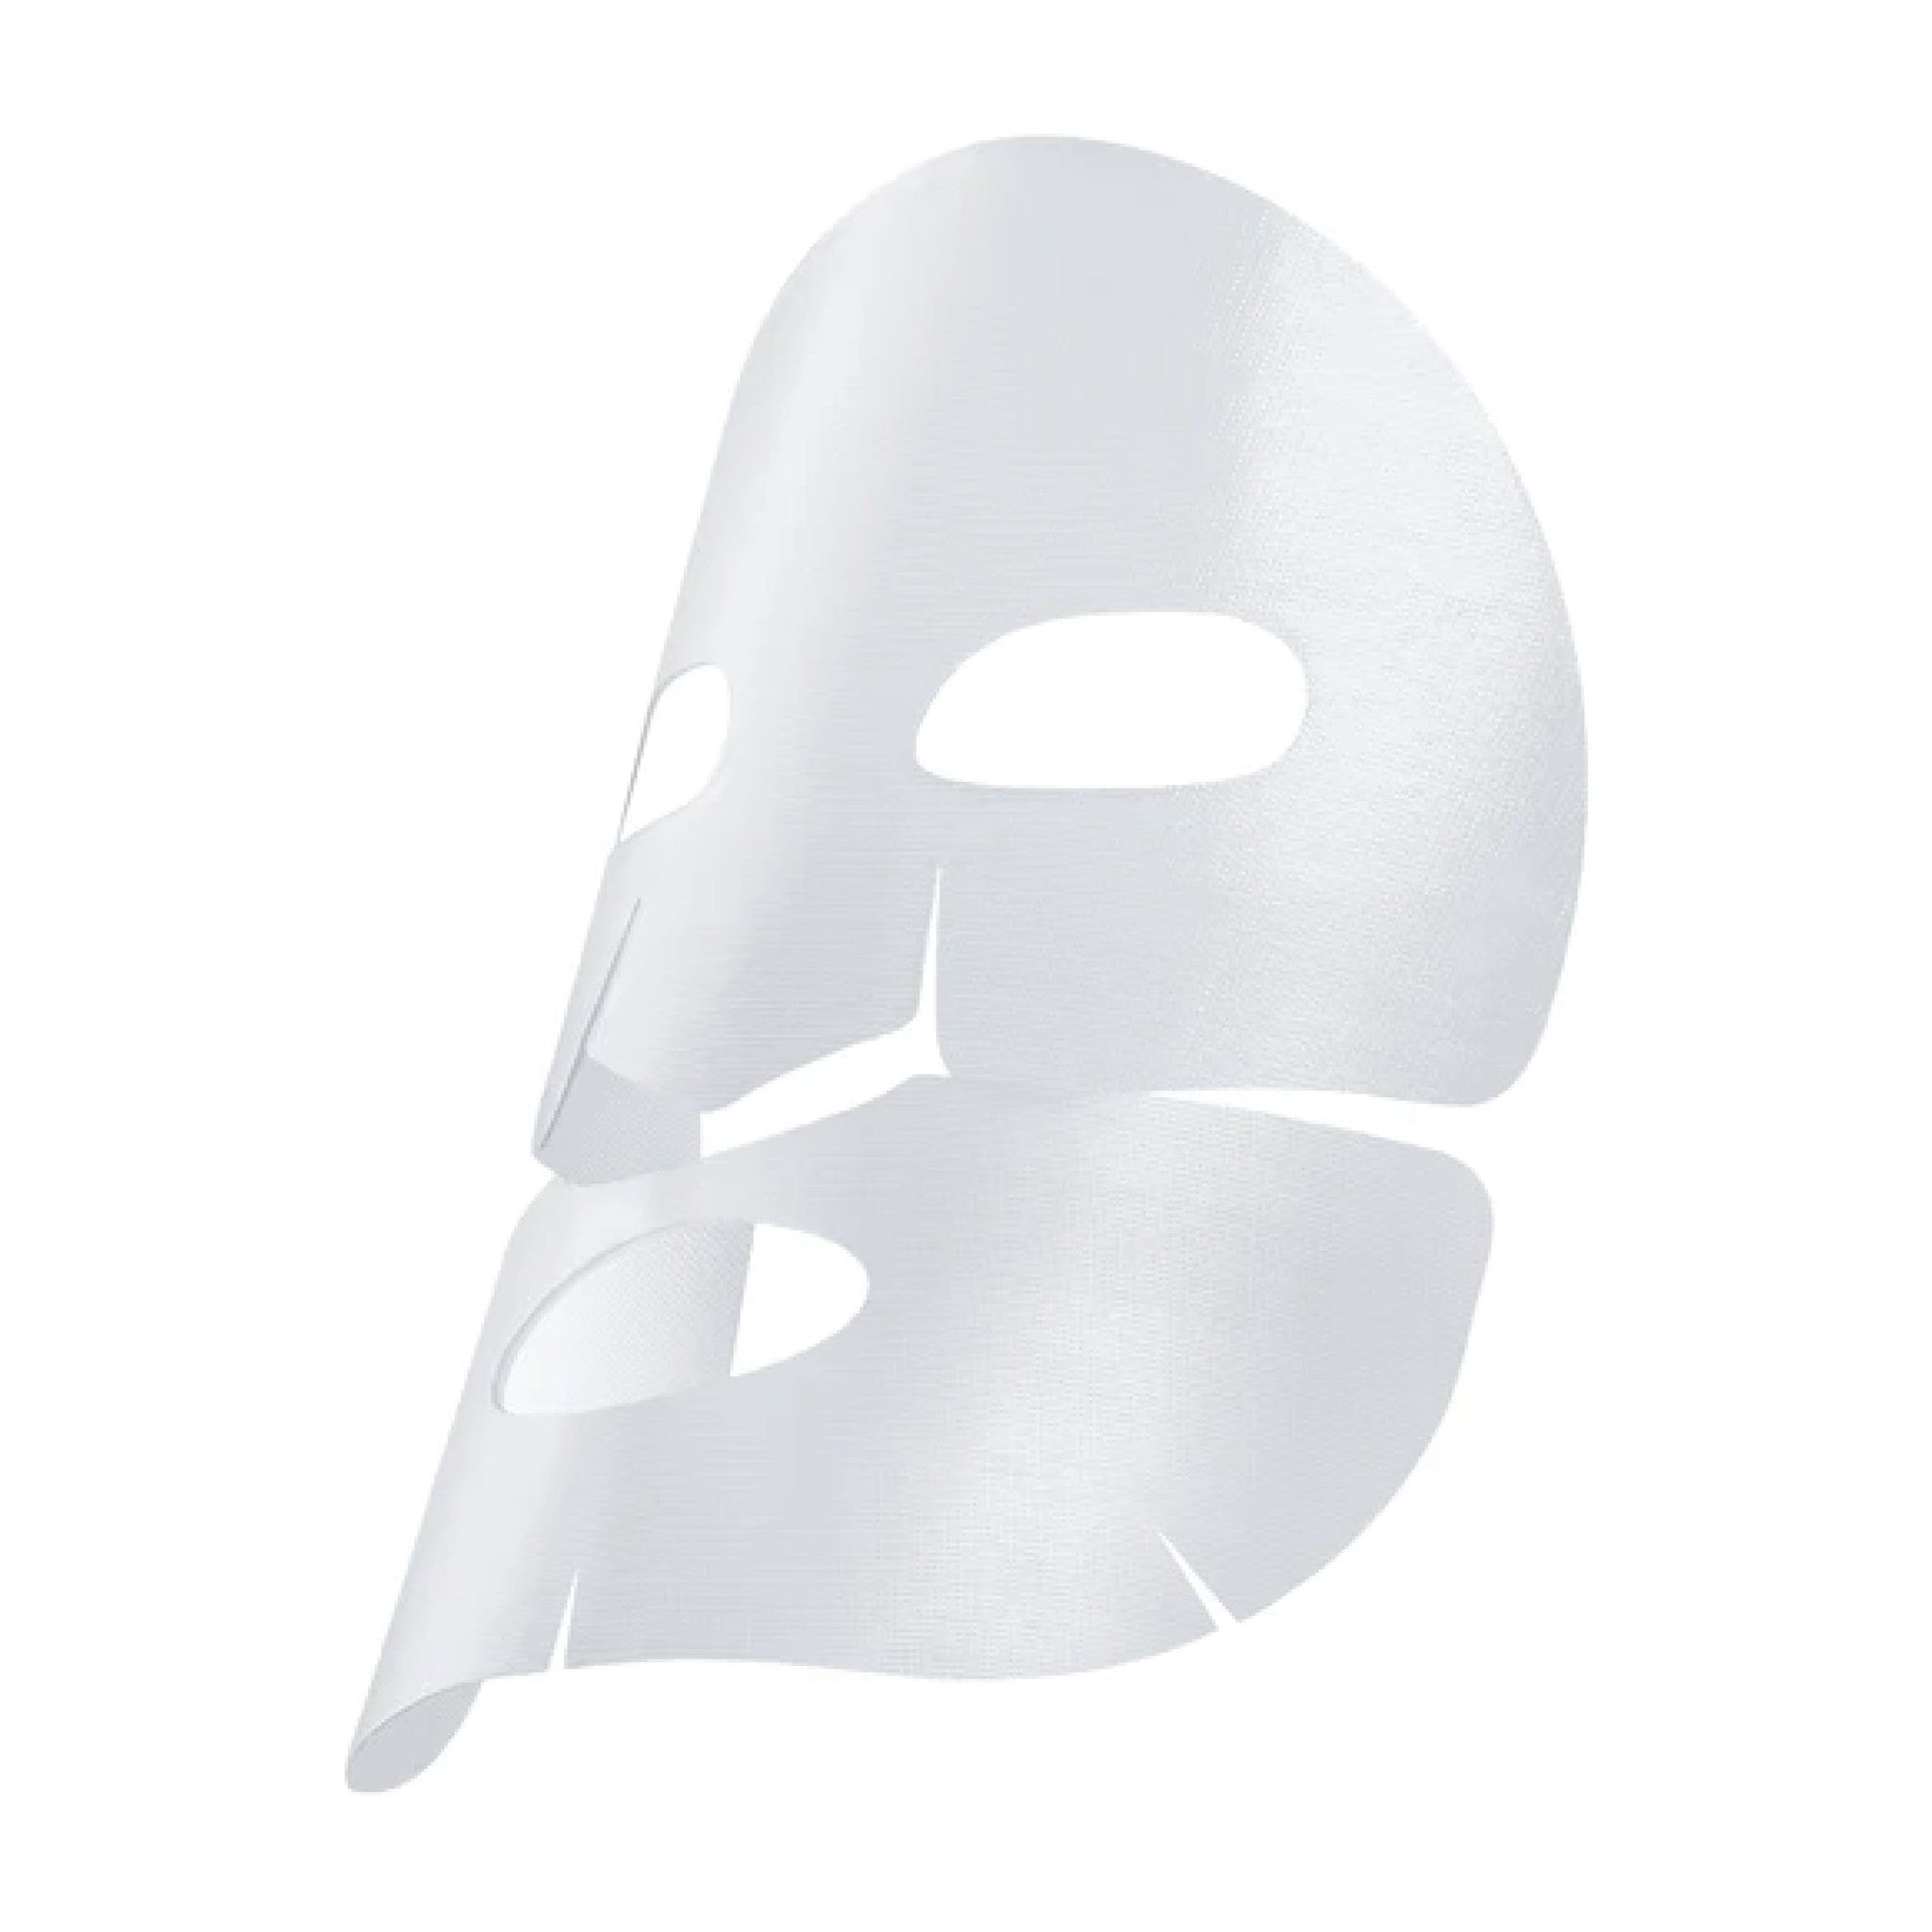 Bioeffect masque empreinte hydrogel